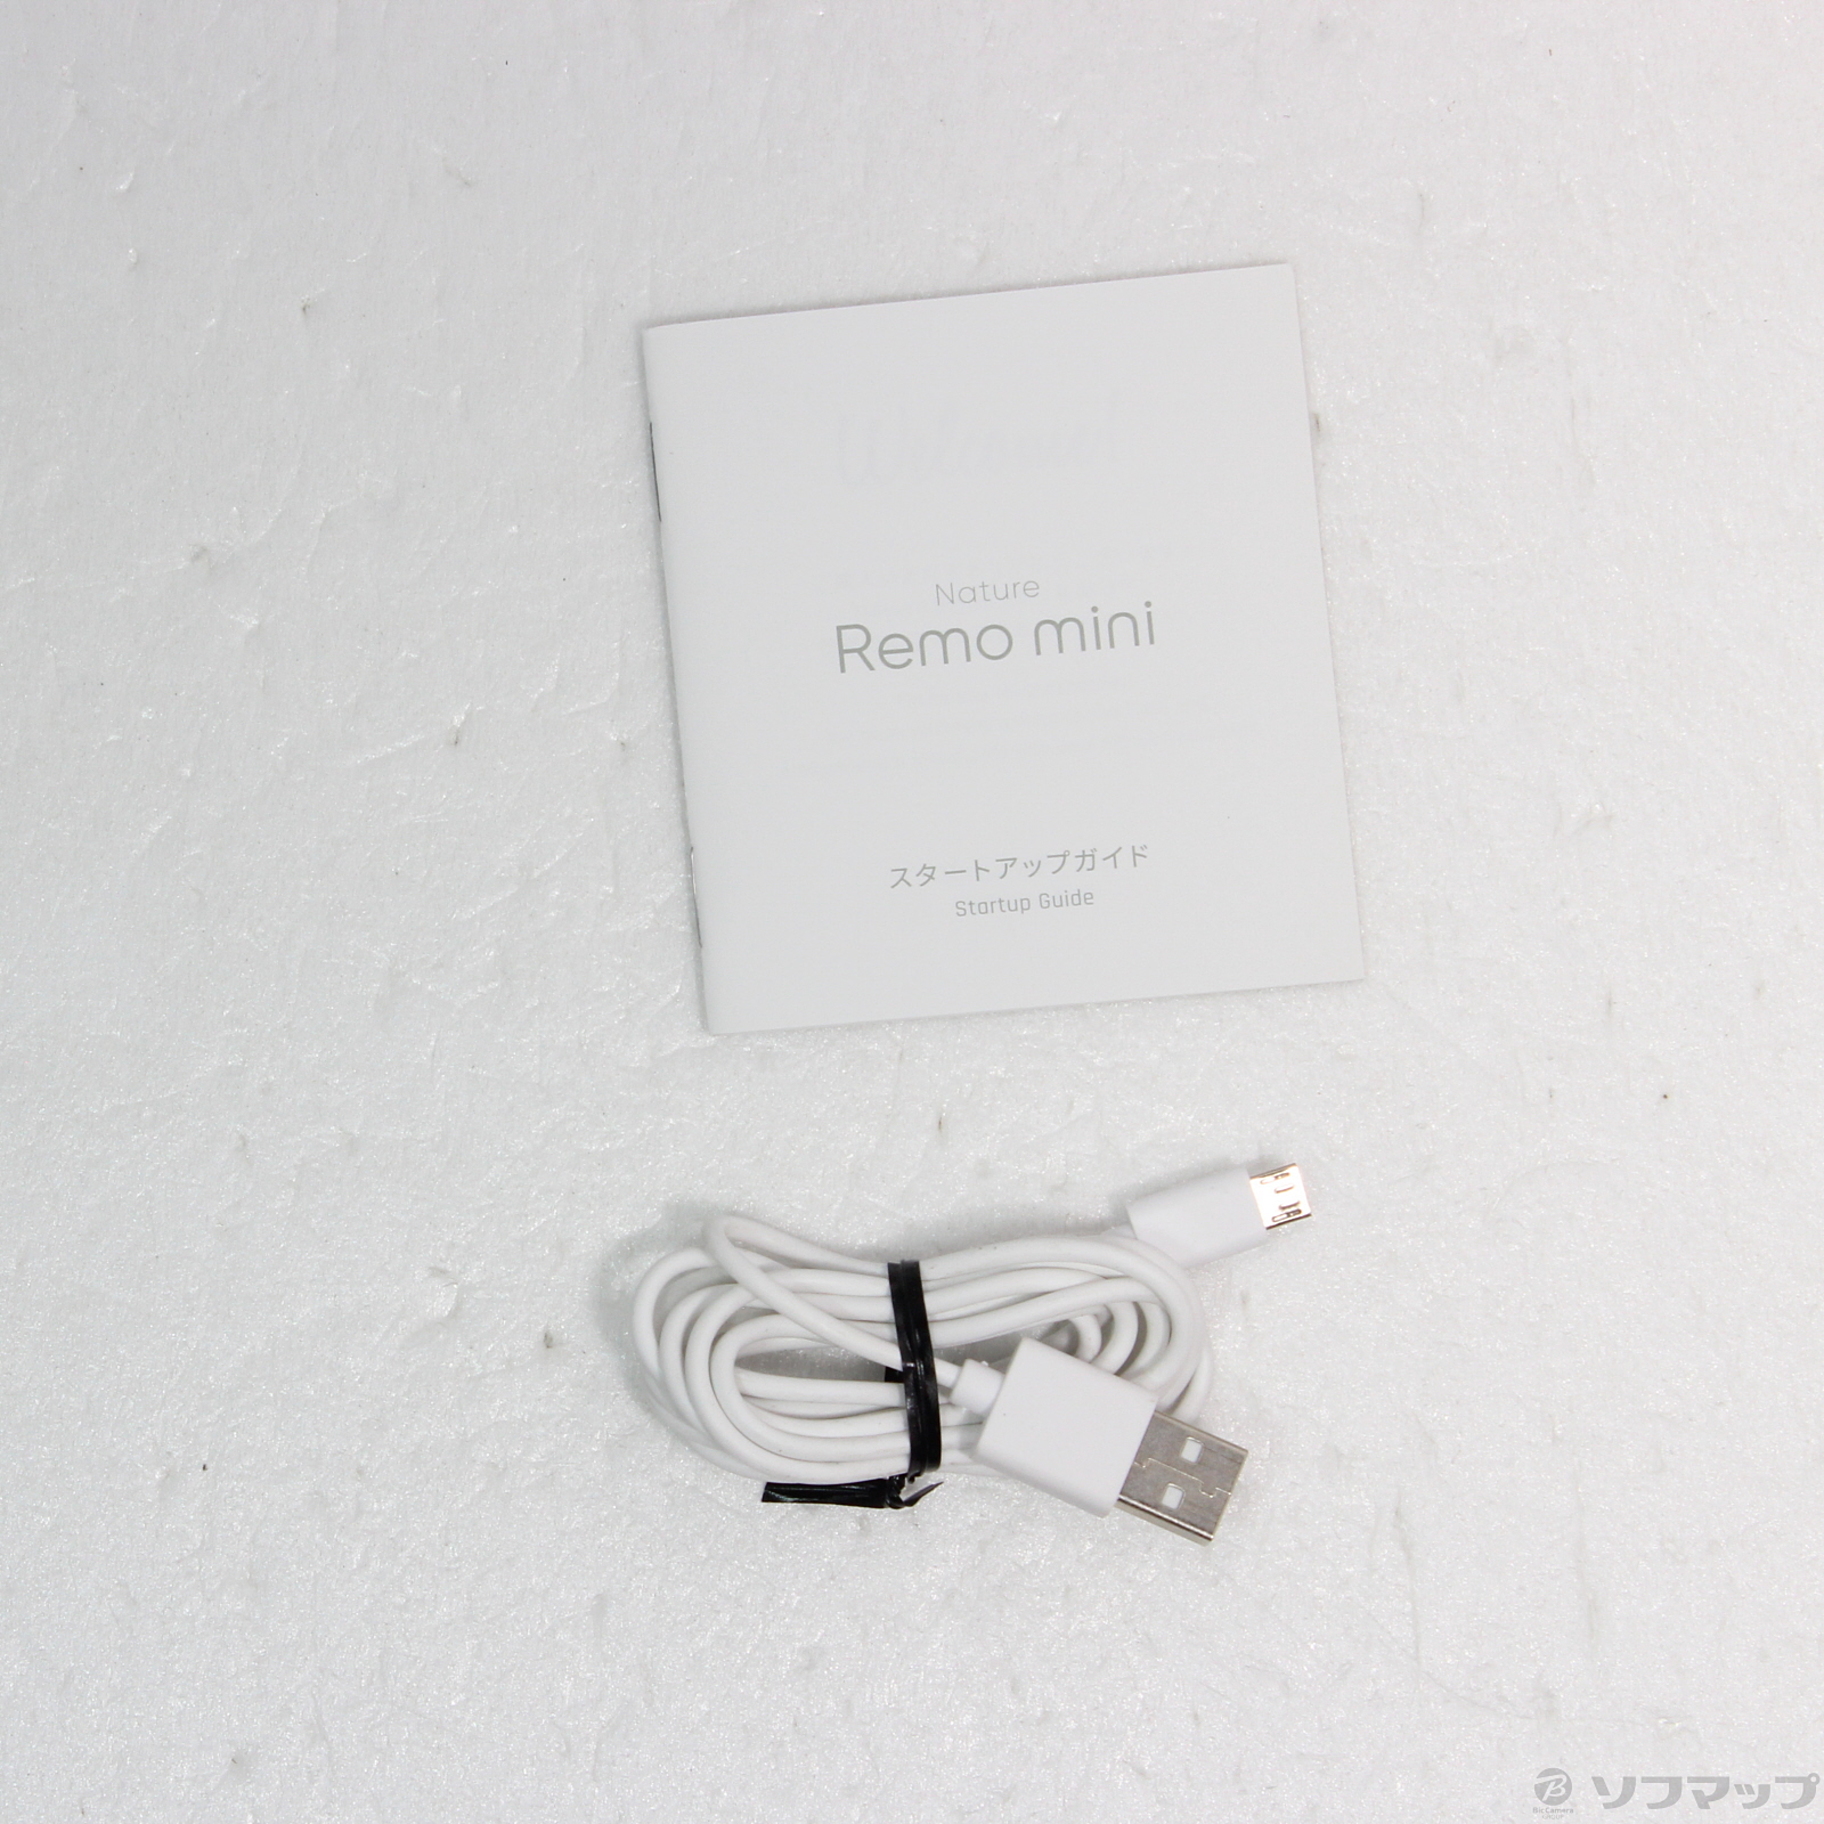 〔展示品〕 スマートリモコン Nature Remo mini REMO-2W1